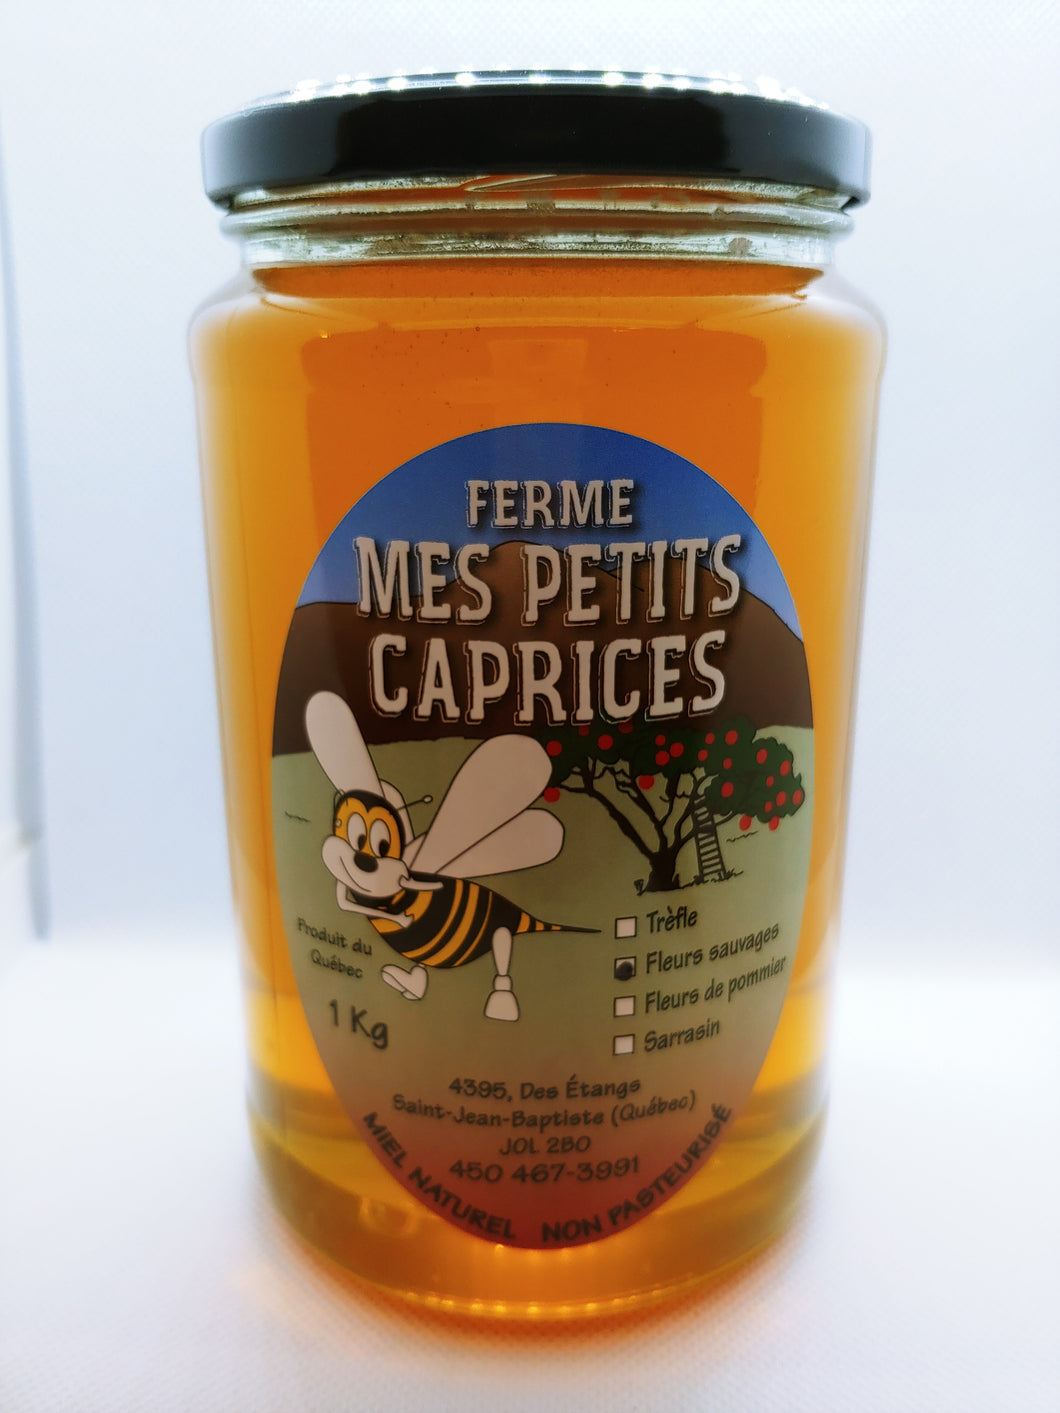 Ferme Mes Petits Caprices - Miel fleurs sauvages 1kg